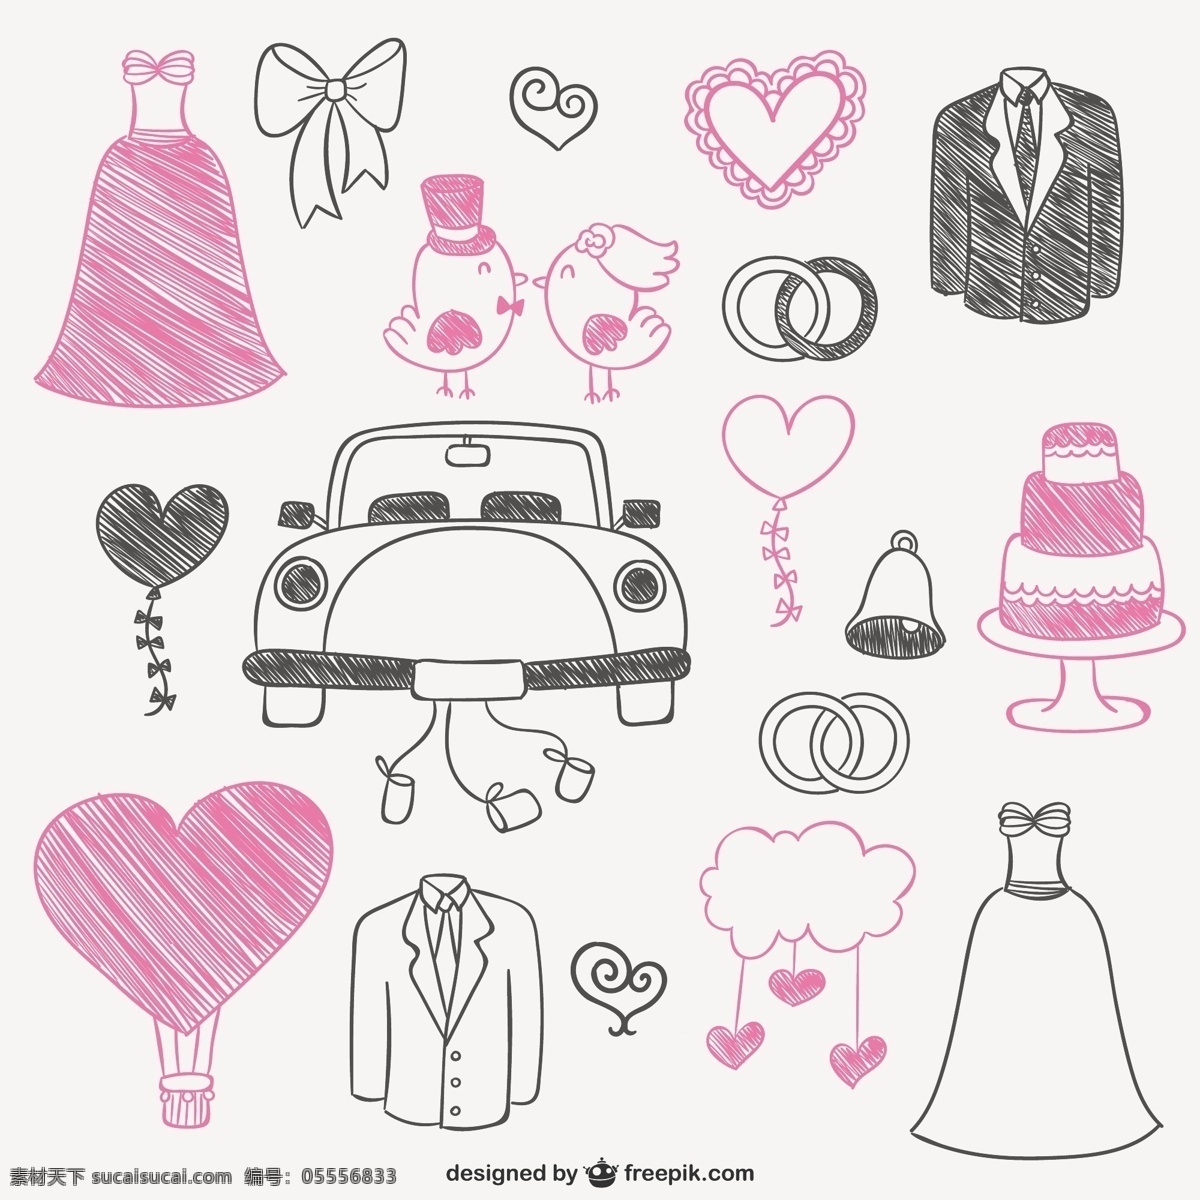 粉红色 黑色 婚礼 涂鸦 婚礼蛋糕 新娘夫妇 黑色礼服 结婚 结婚礼服 乱涂 刚刚结婚 新郎结婚 只是 白色